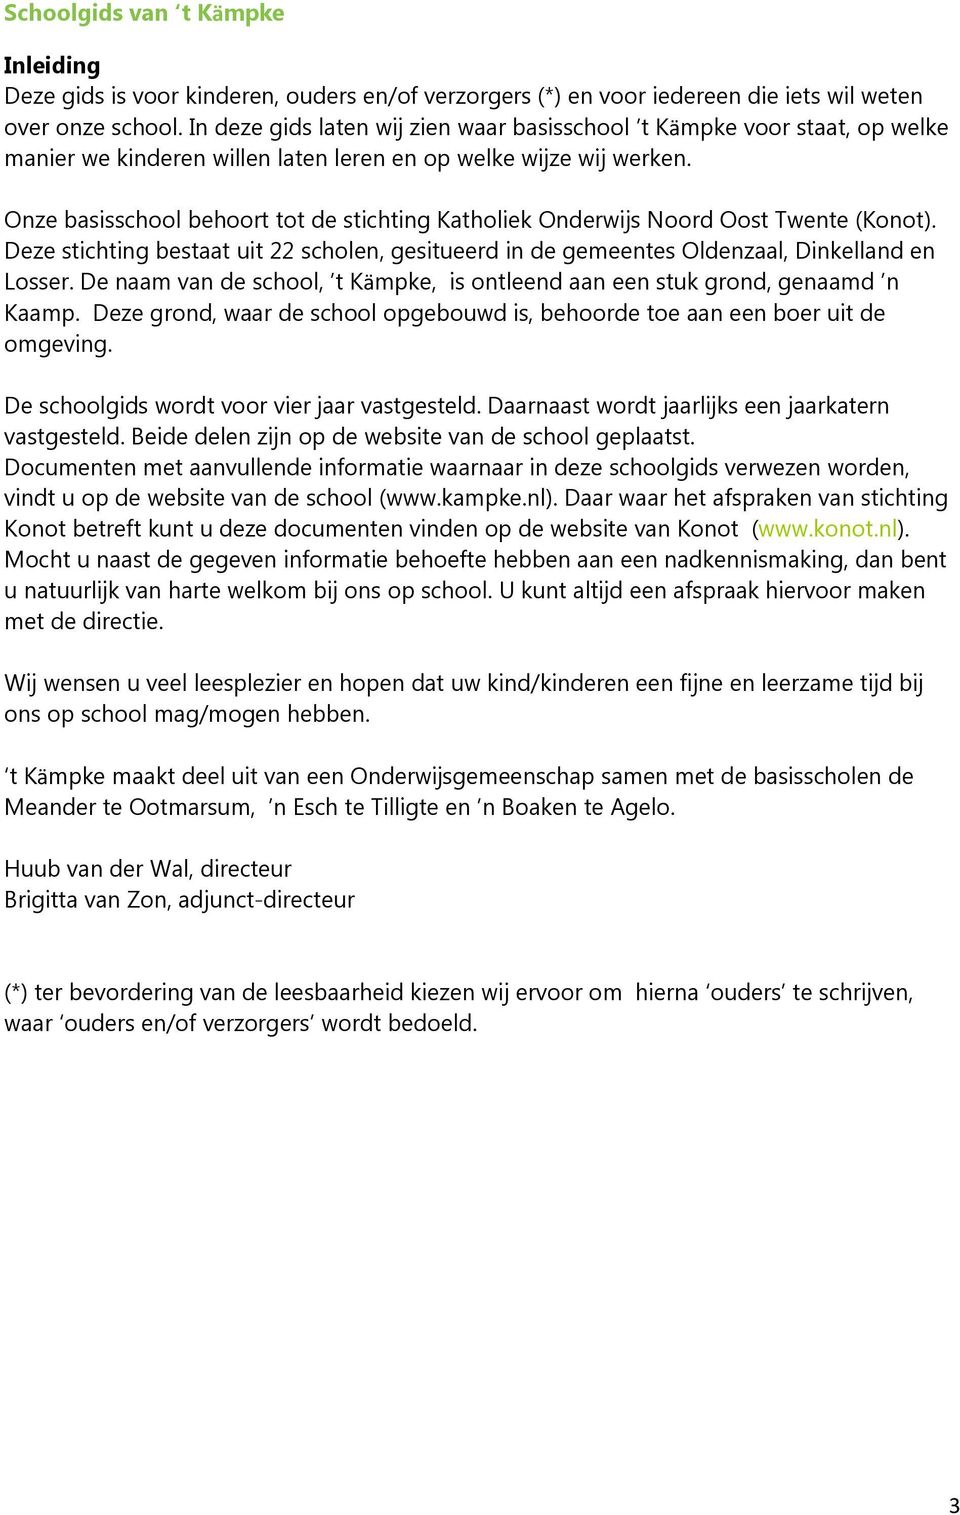 Onze basisschool behoort tot de stichting Katholiek Onderwijs Noord Oost Twente (Konot). Deze stichting bestaat uit 22 scholen, gesitueerd in de gemeentes Oldenzaal, Dinkelland en Losser.